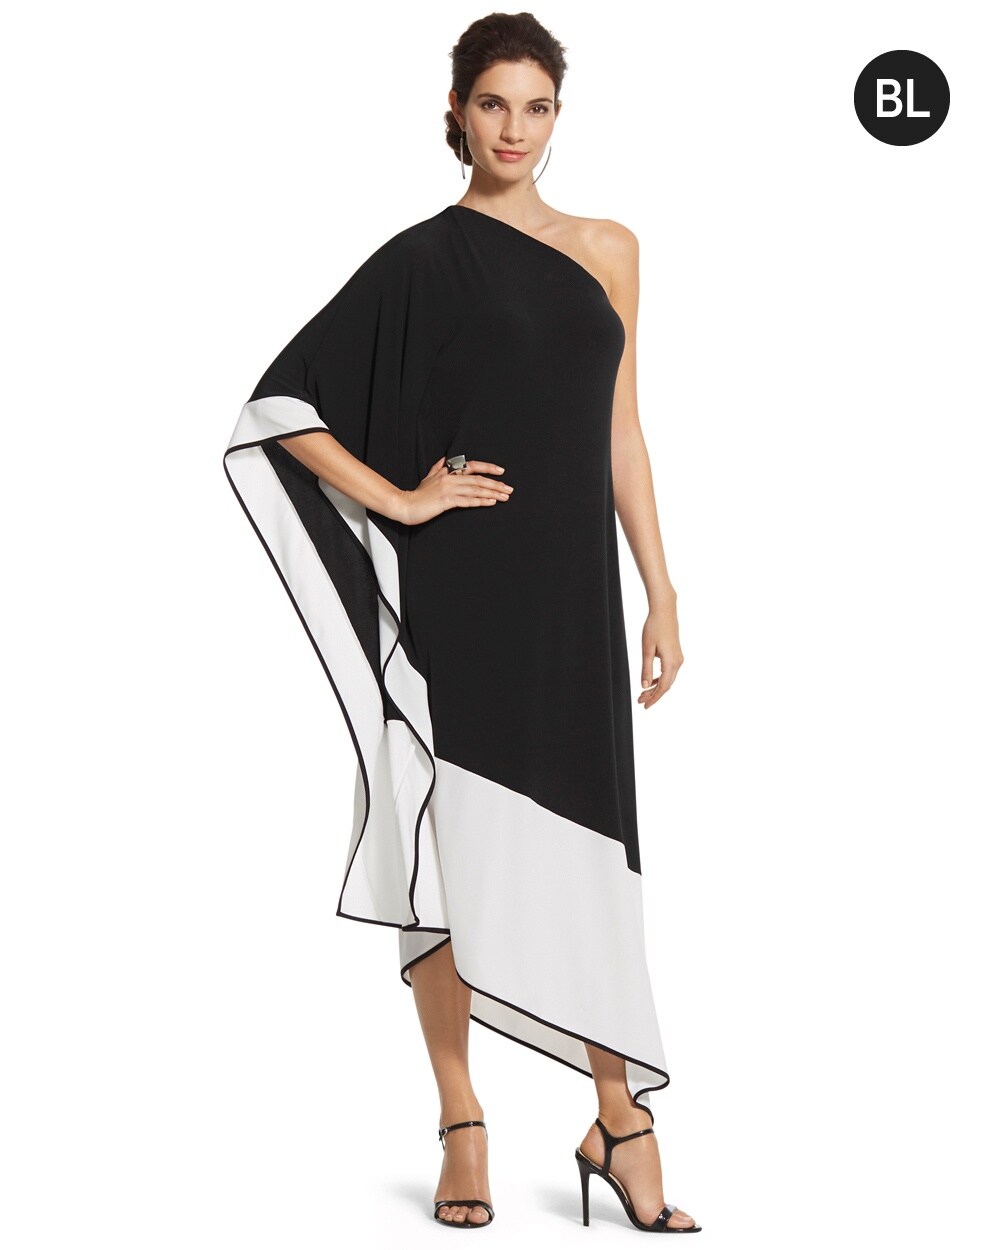 Black Label Colorblocked One-Shoulder Dress